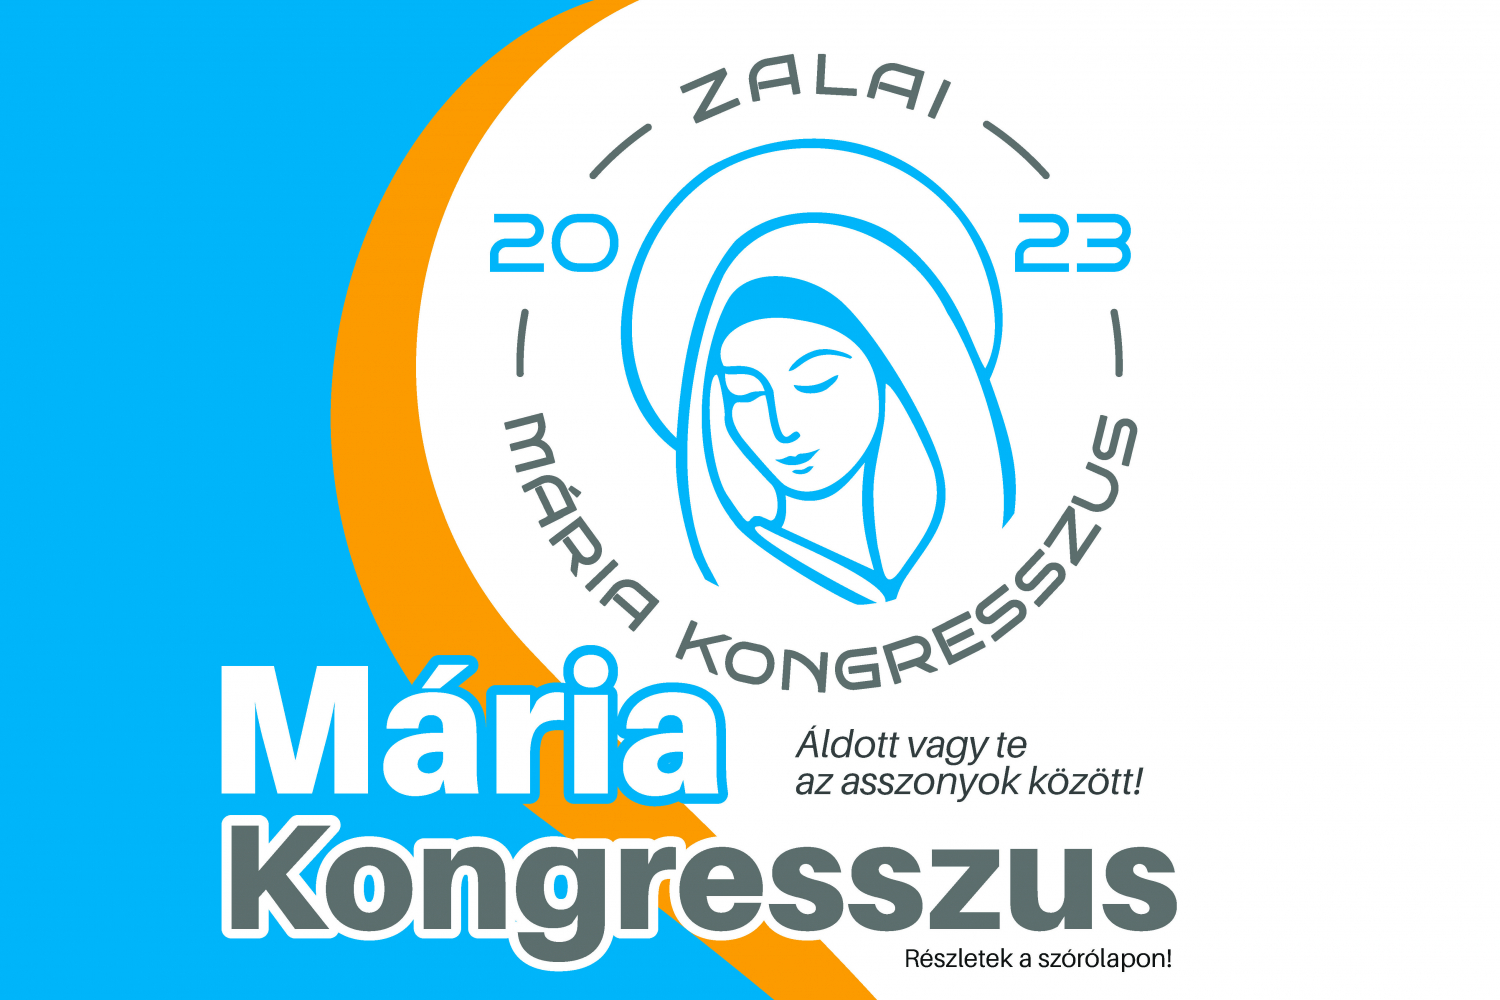 Mária Kongresszust rendeznek Zalaegerszegen